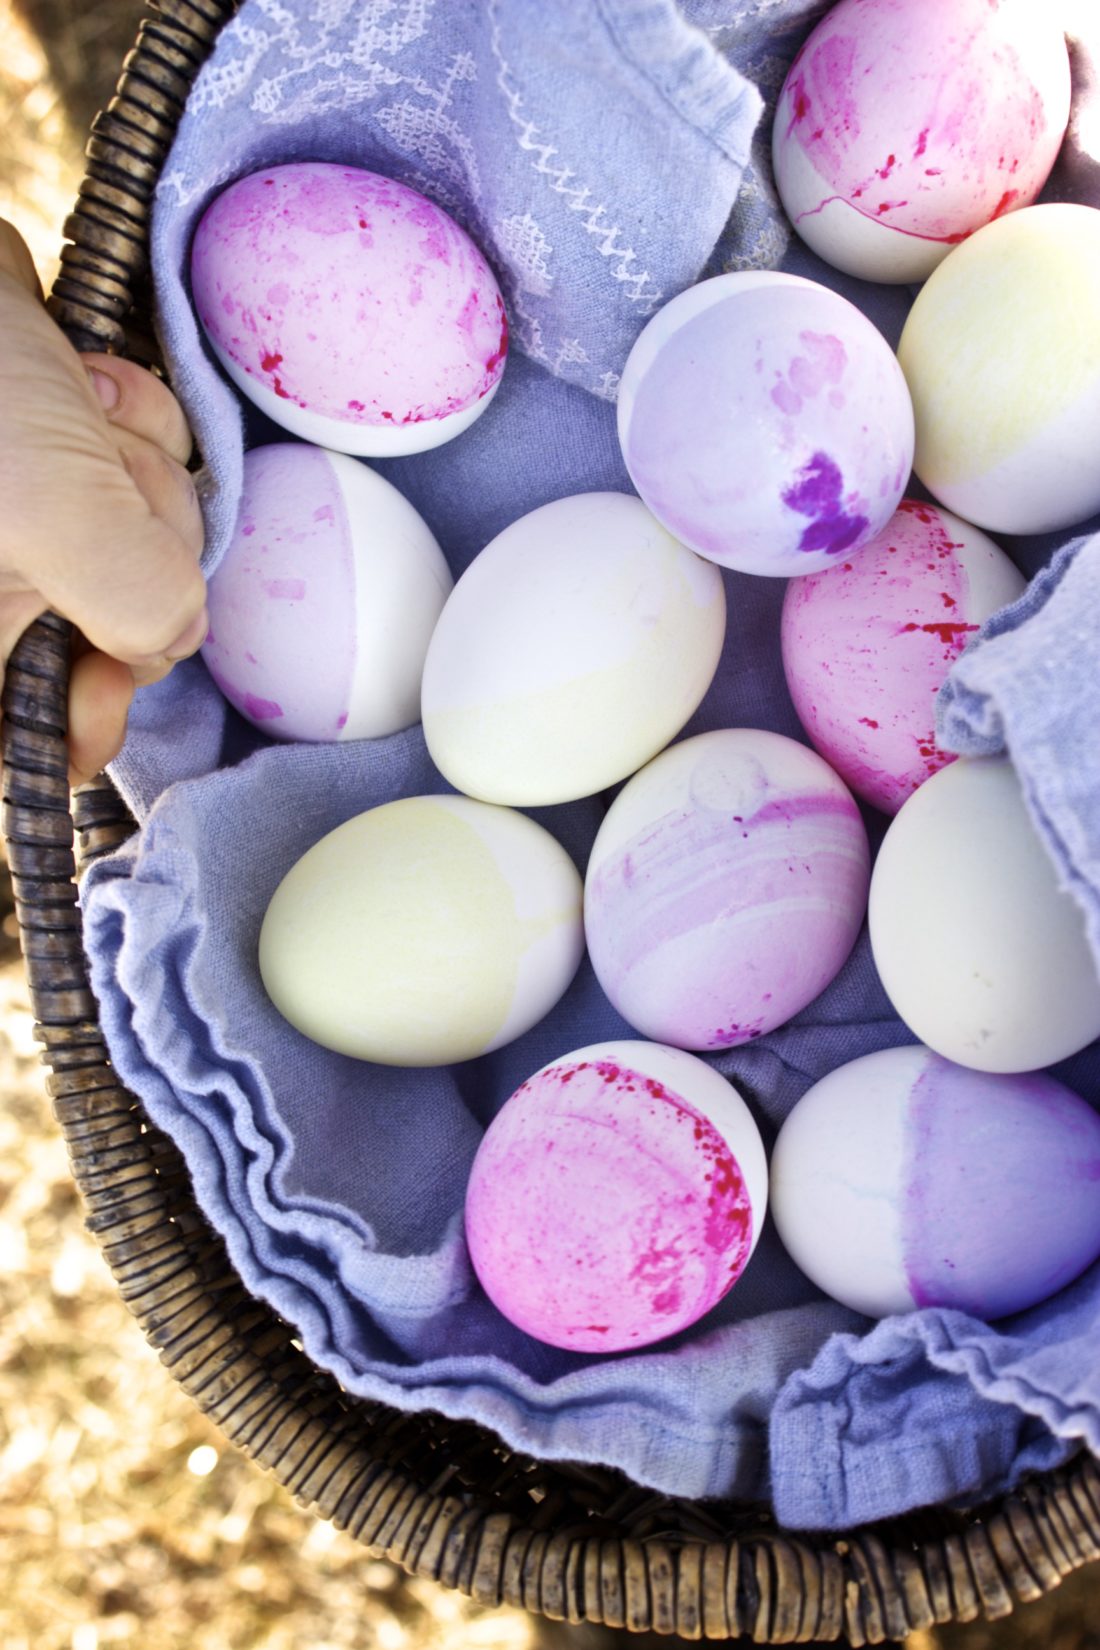 Surprise-Inside Easter Eggs